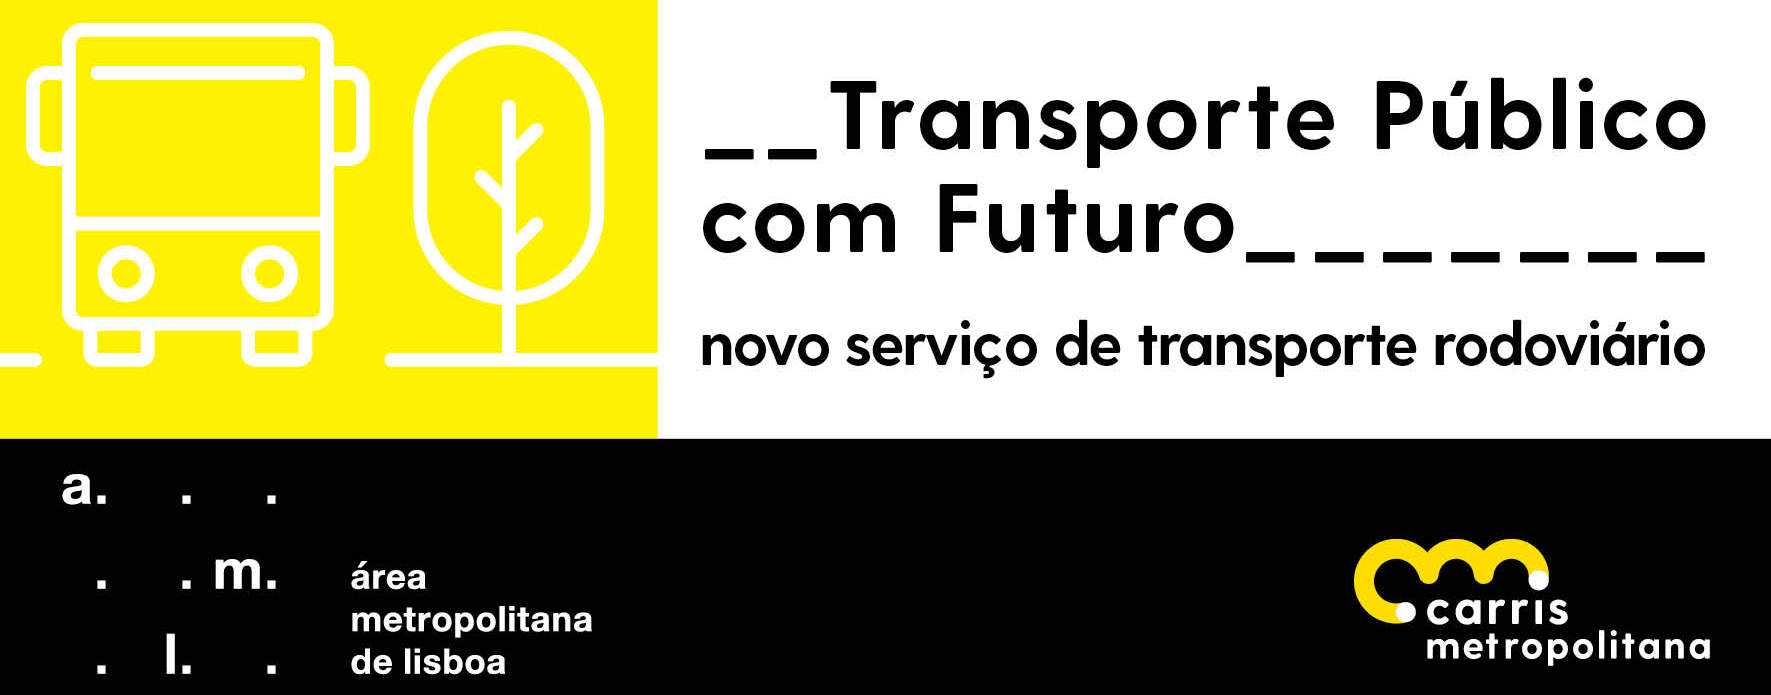 Novo serviço de transporte rodoviário e imagem da Carris Metropolitana revelados dia 11 de janeiro